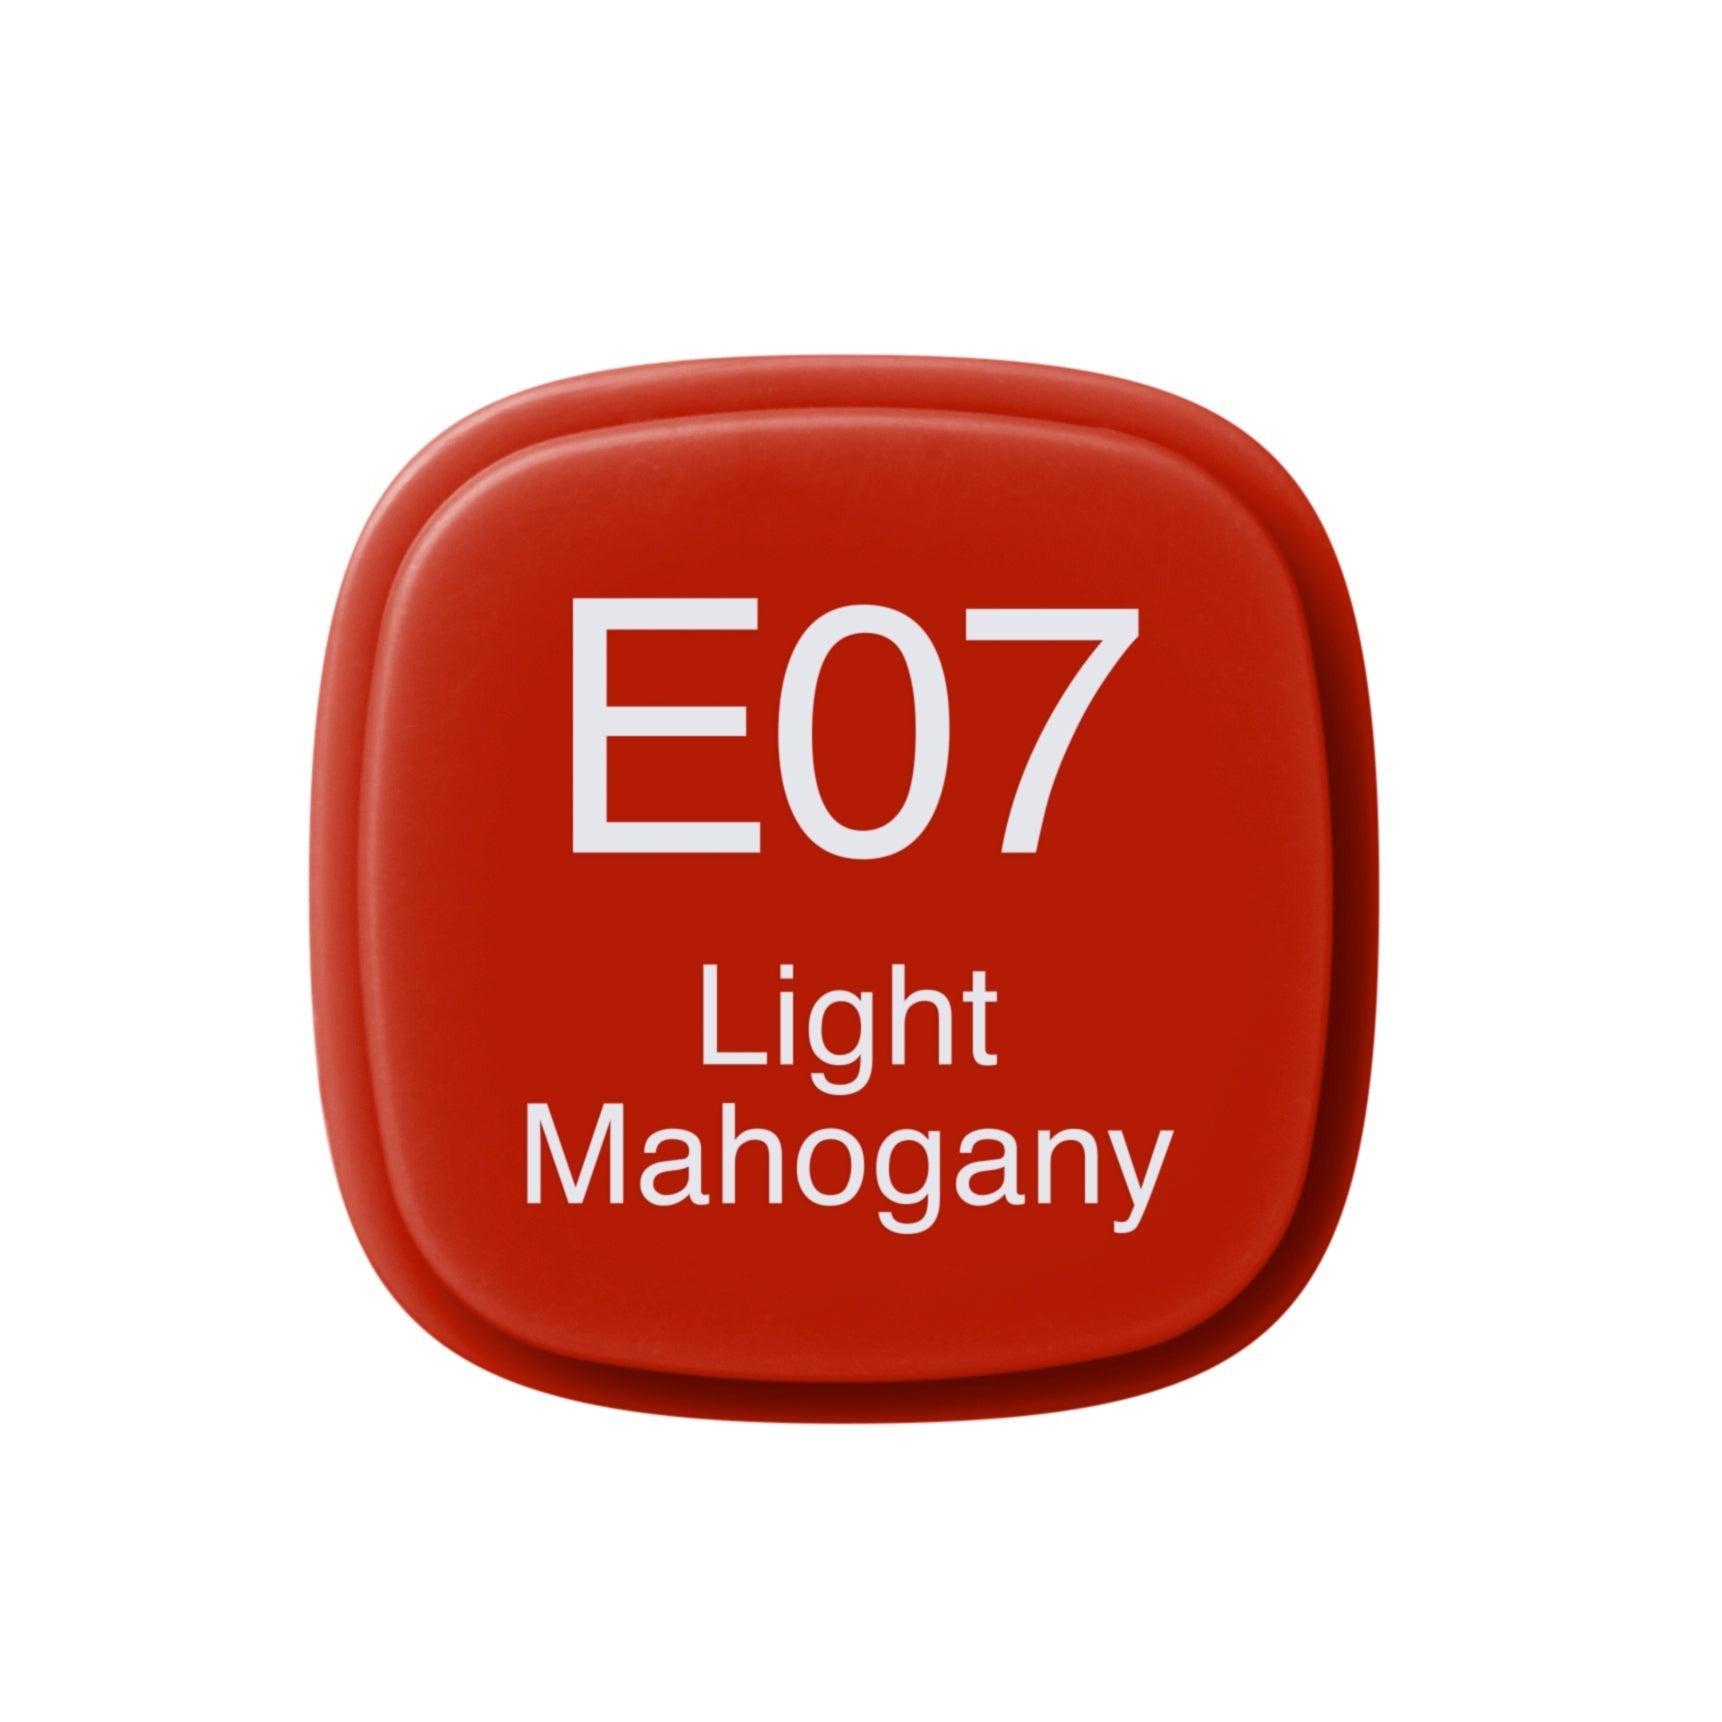 Copic - Original Marker - Light Mahogany - E07-ScrapbookPal